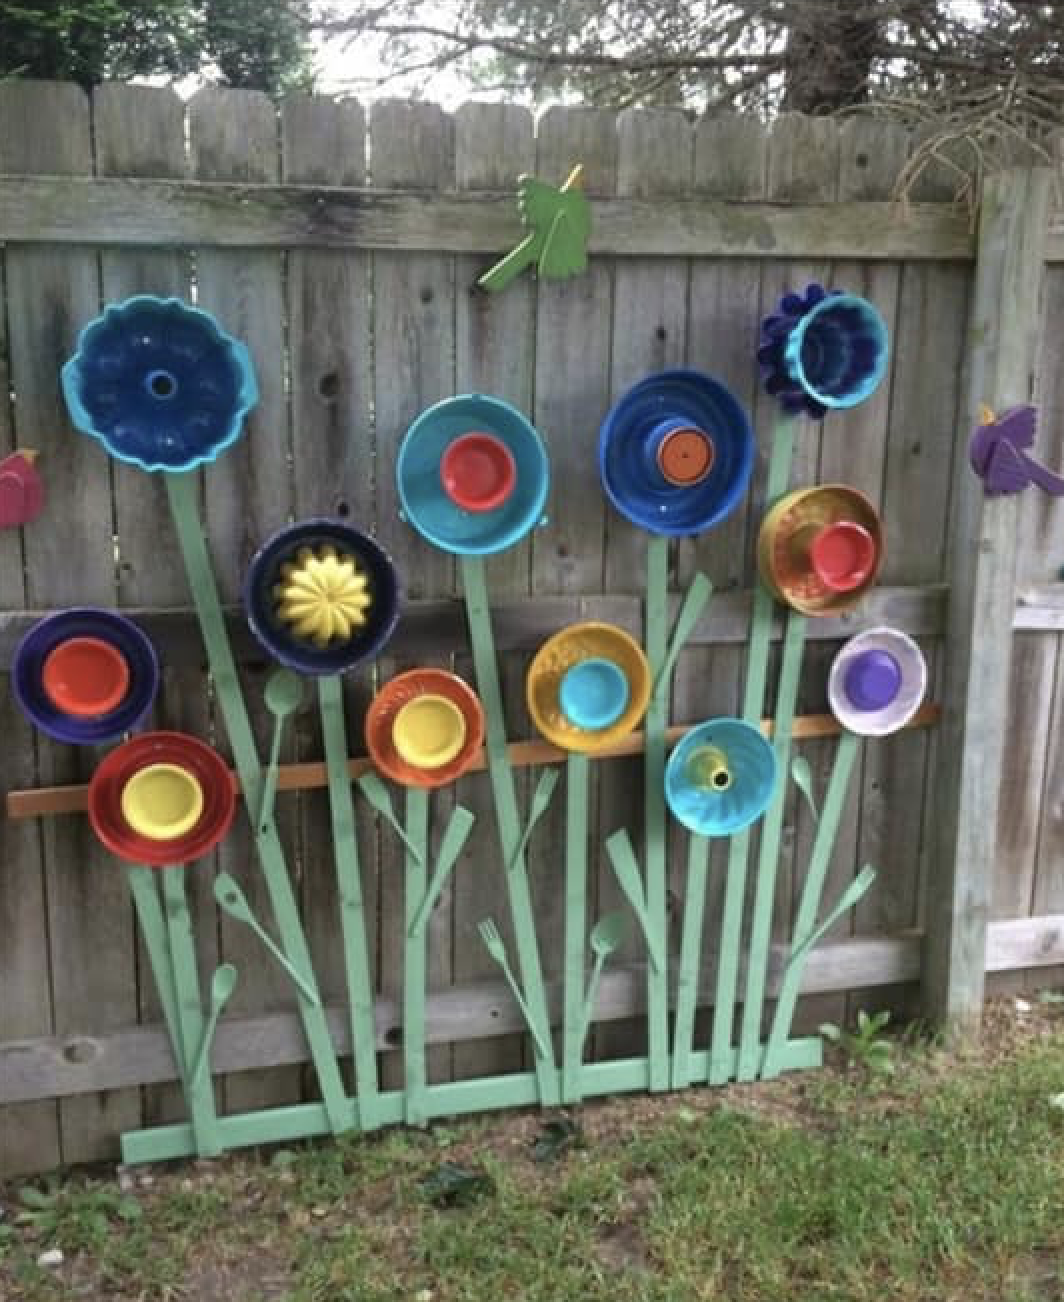 Hubcap flower garden - such a cute idea! 